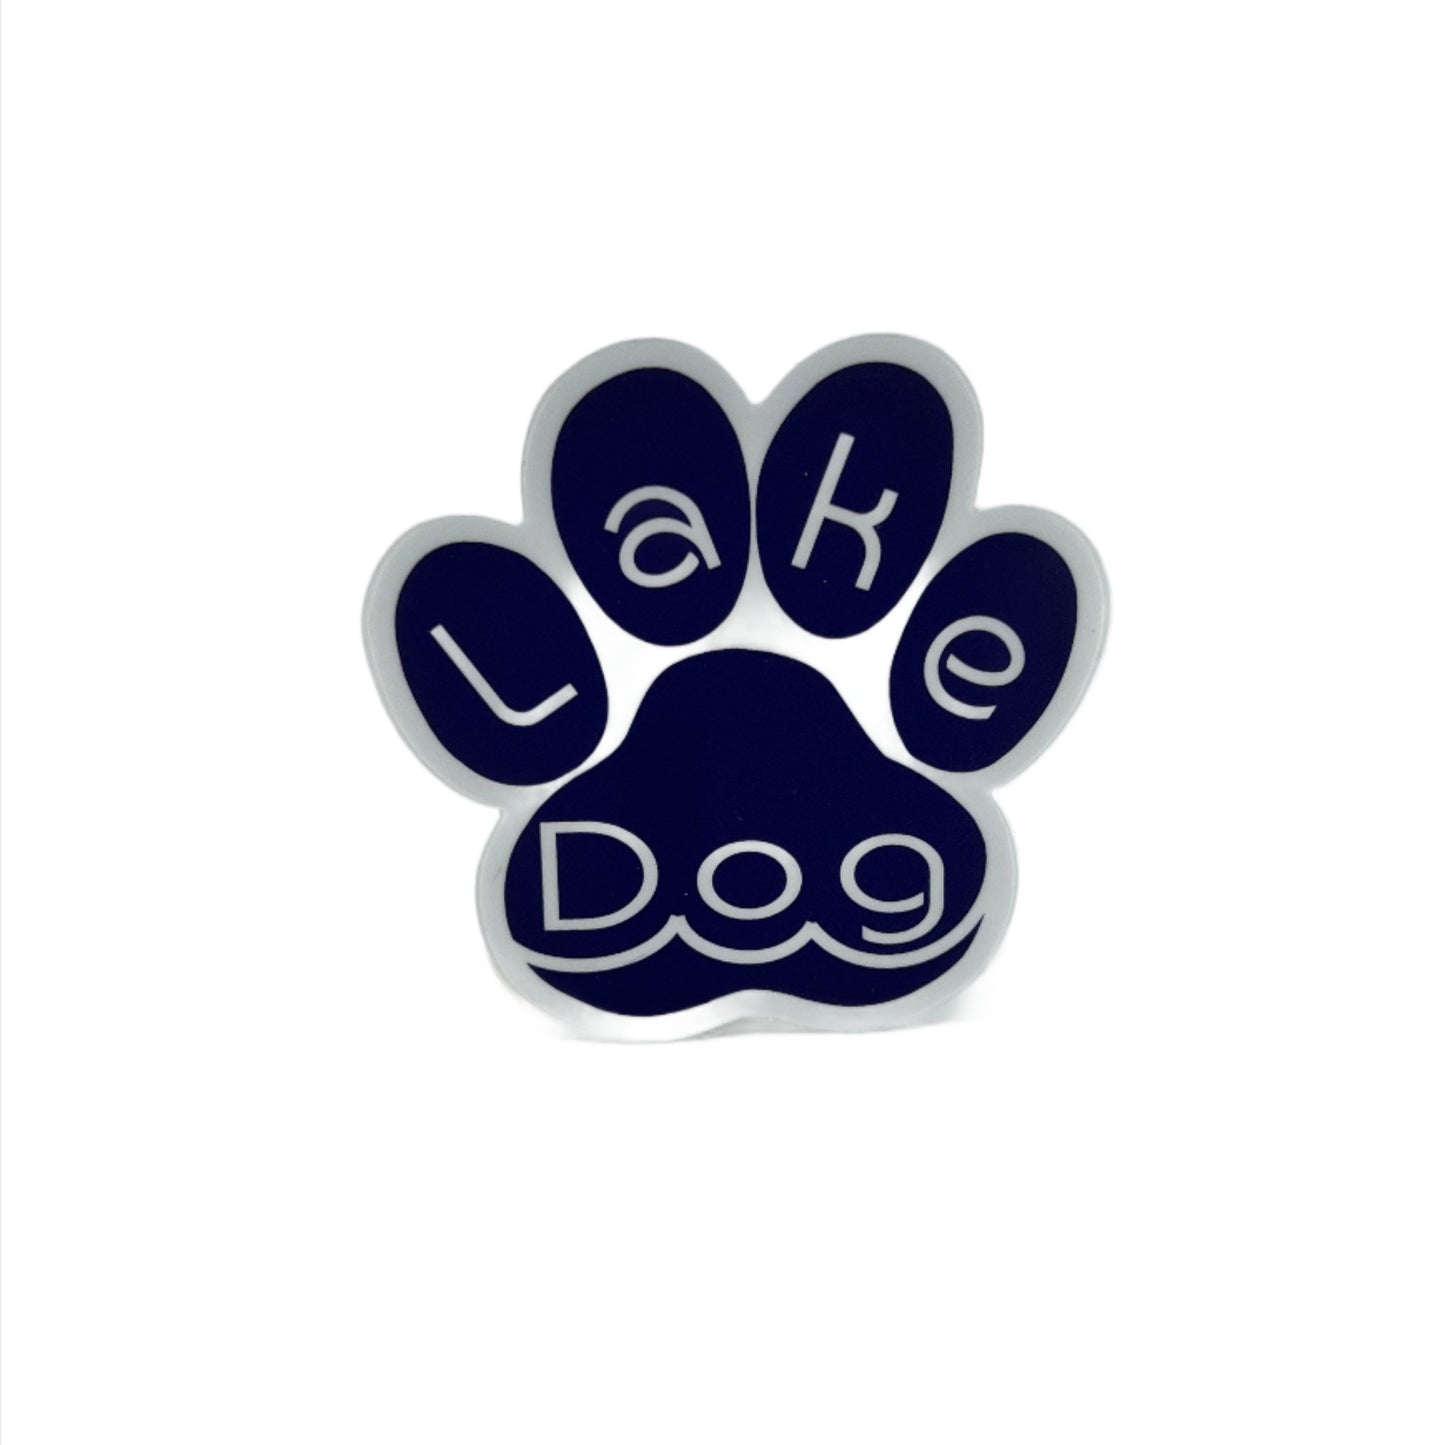 Lake Dog Vinyl 3" Sticker